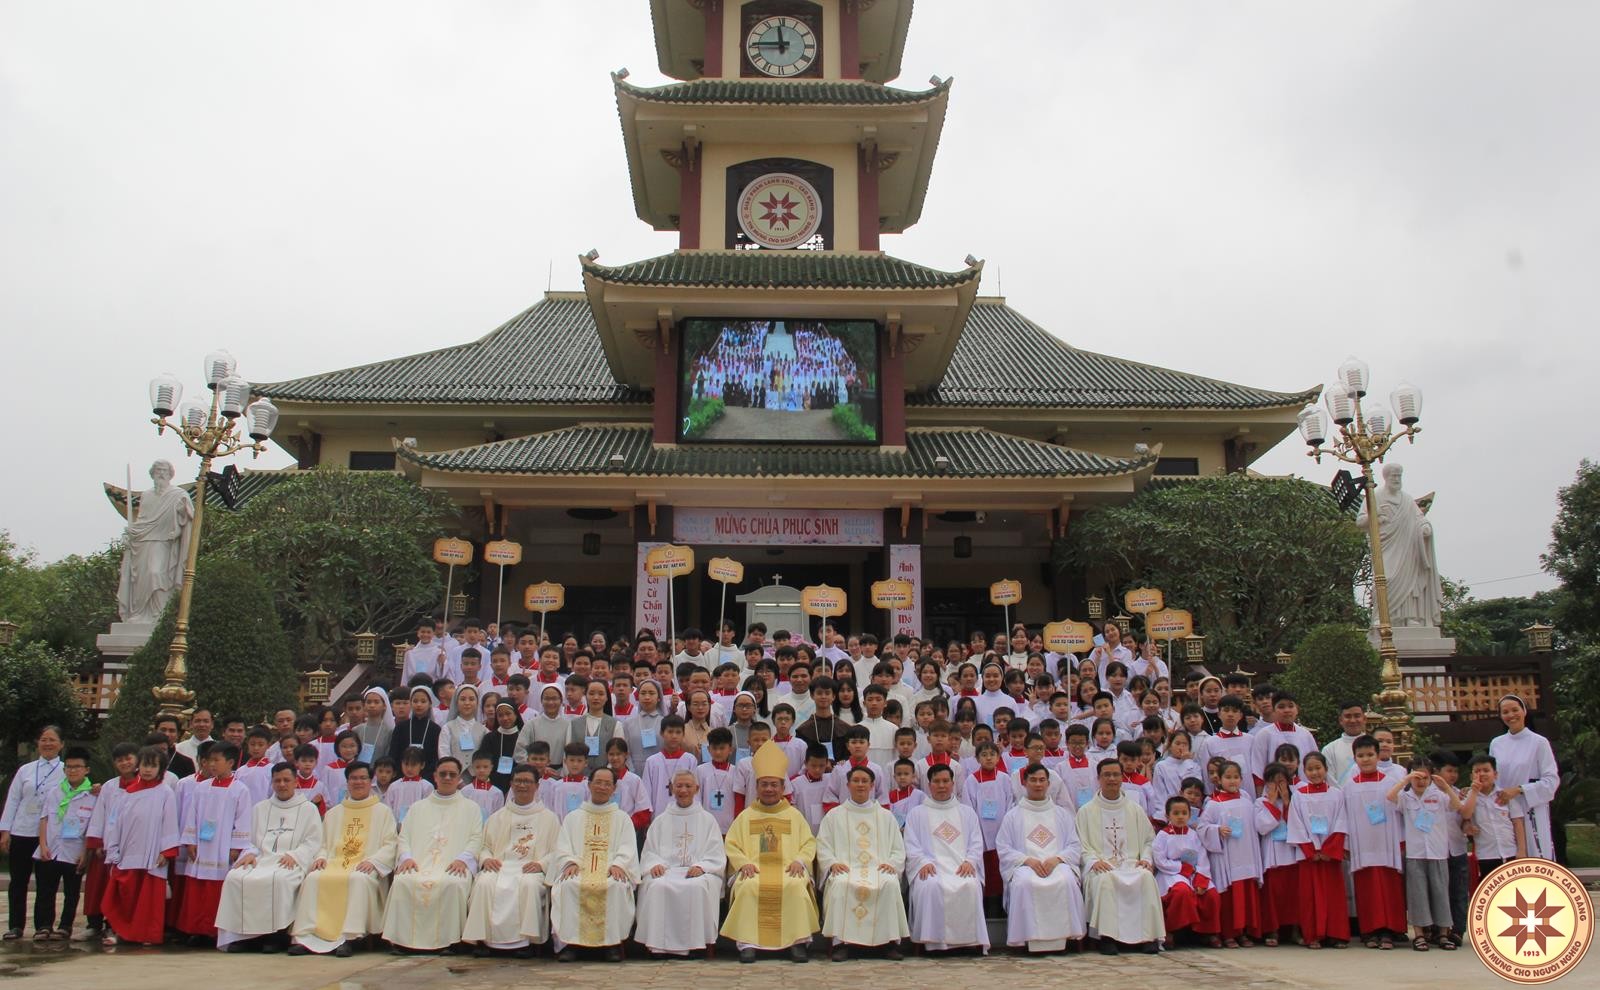 Ngày gặp gỡ Lễ Sinh và Cầu cho Ơn Thiên Triệu lần Thứ Bốn tại Giáo phận Lạng Sơn Cao Bằng